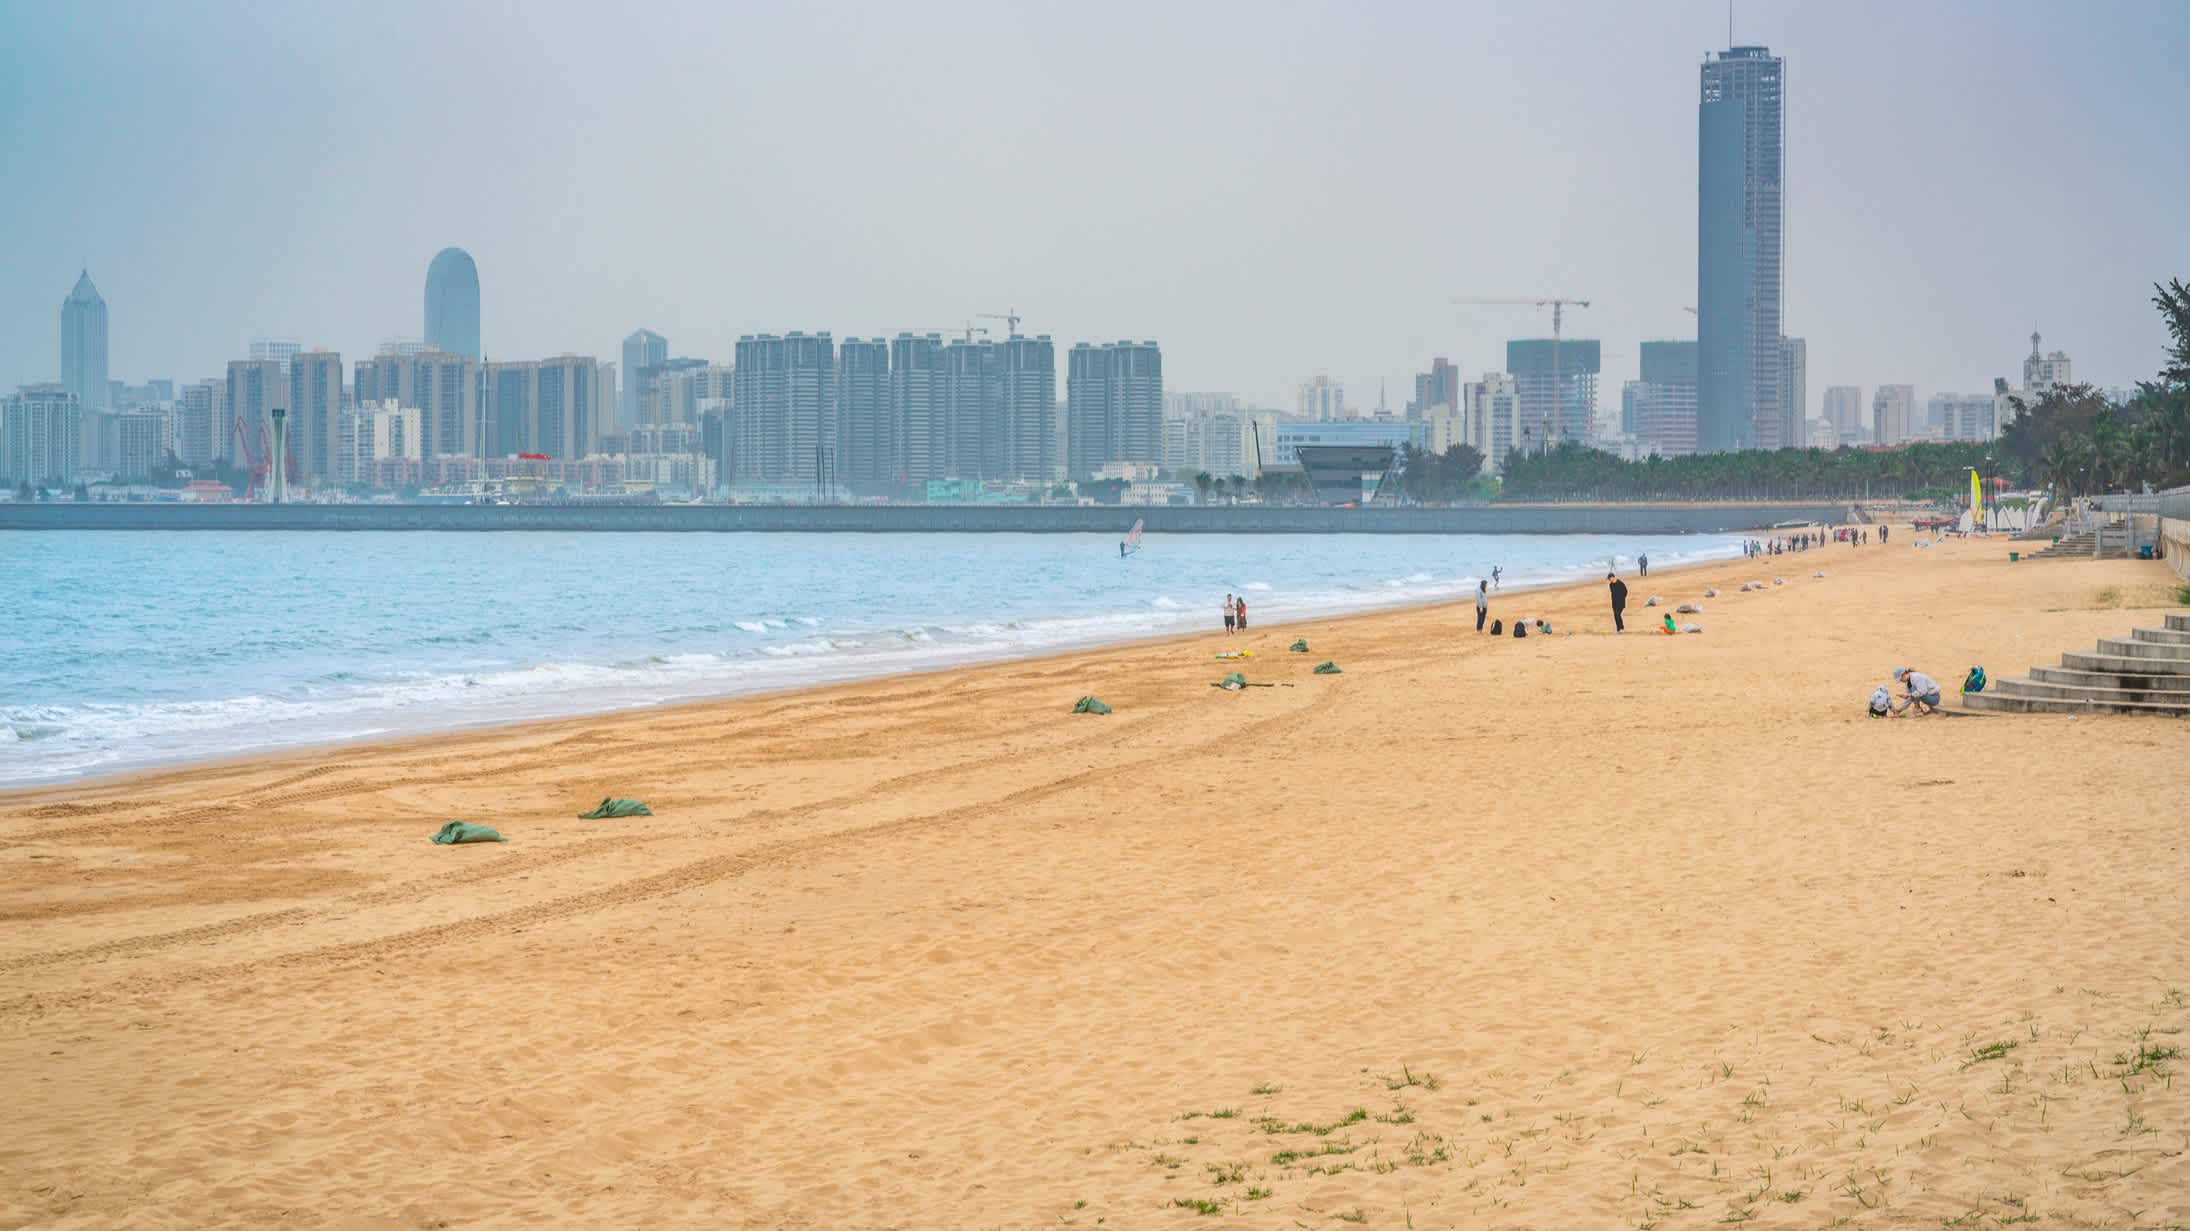  Personnes sur le sable avec la ville d'Haikou en arrière-plan, à Hainan, en Chine.

